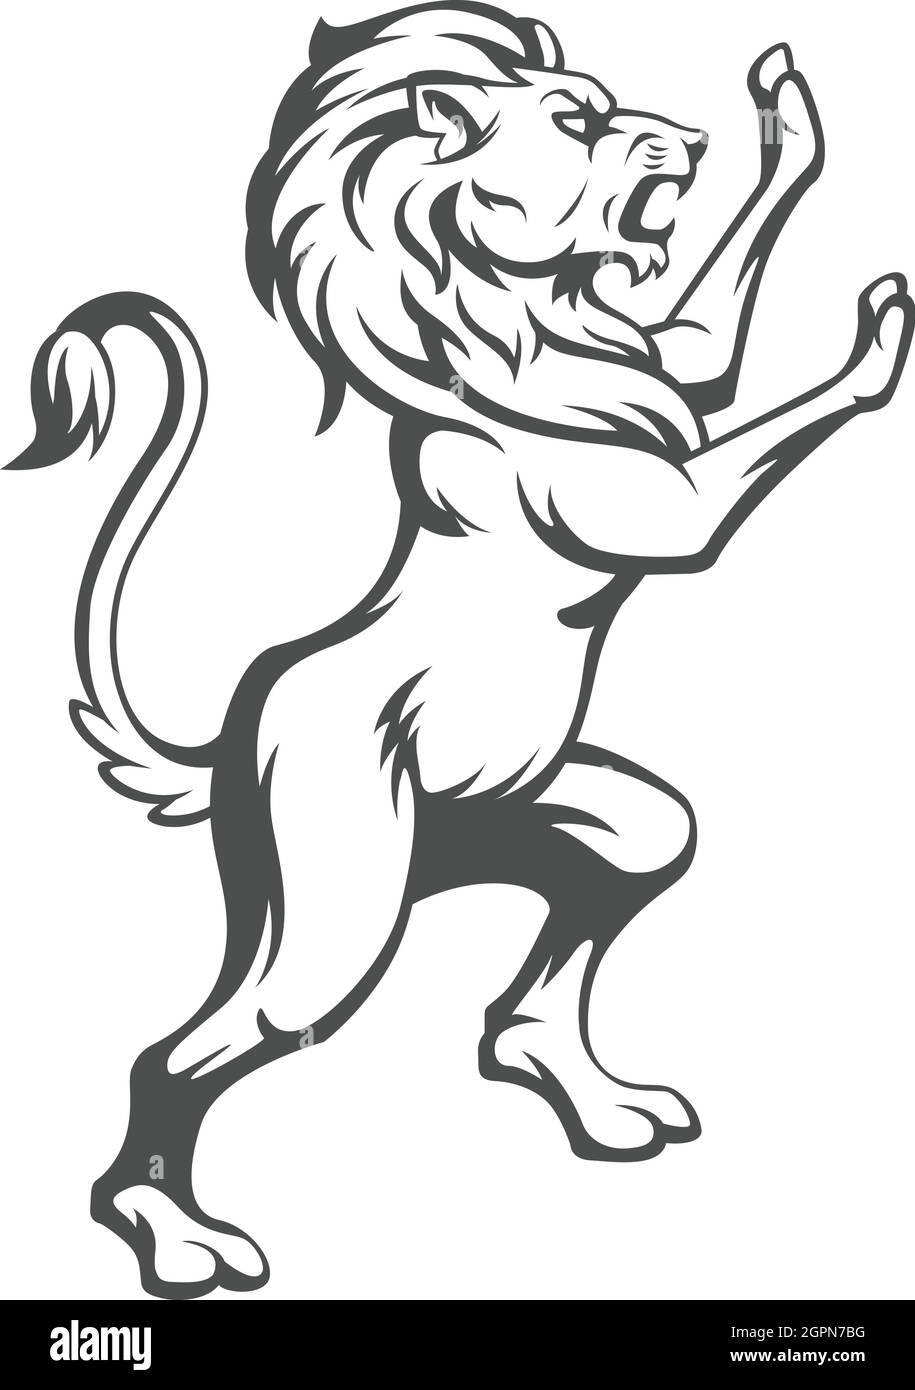 Dessin vectoriel de l'écusson héraldique du lion debout silhouette Illustration de Vecteur